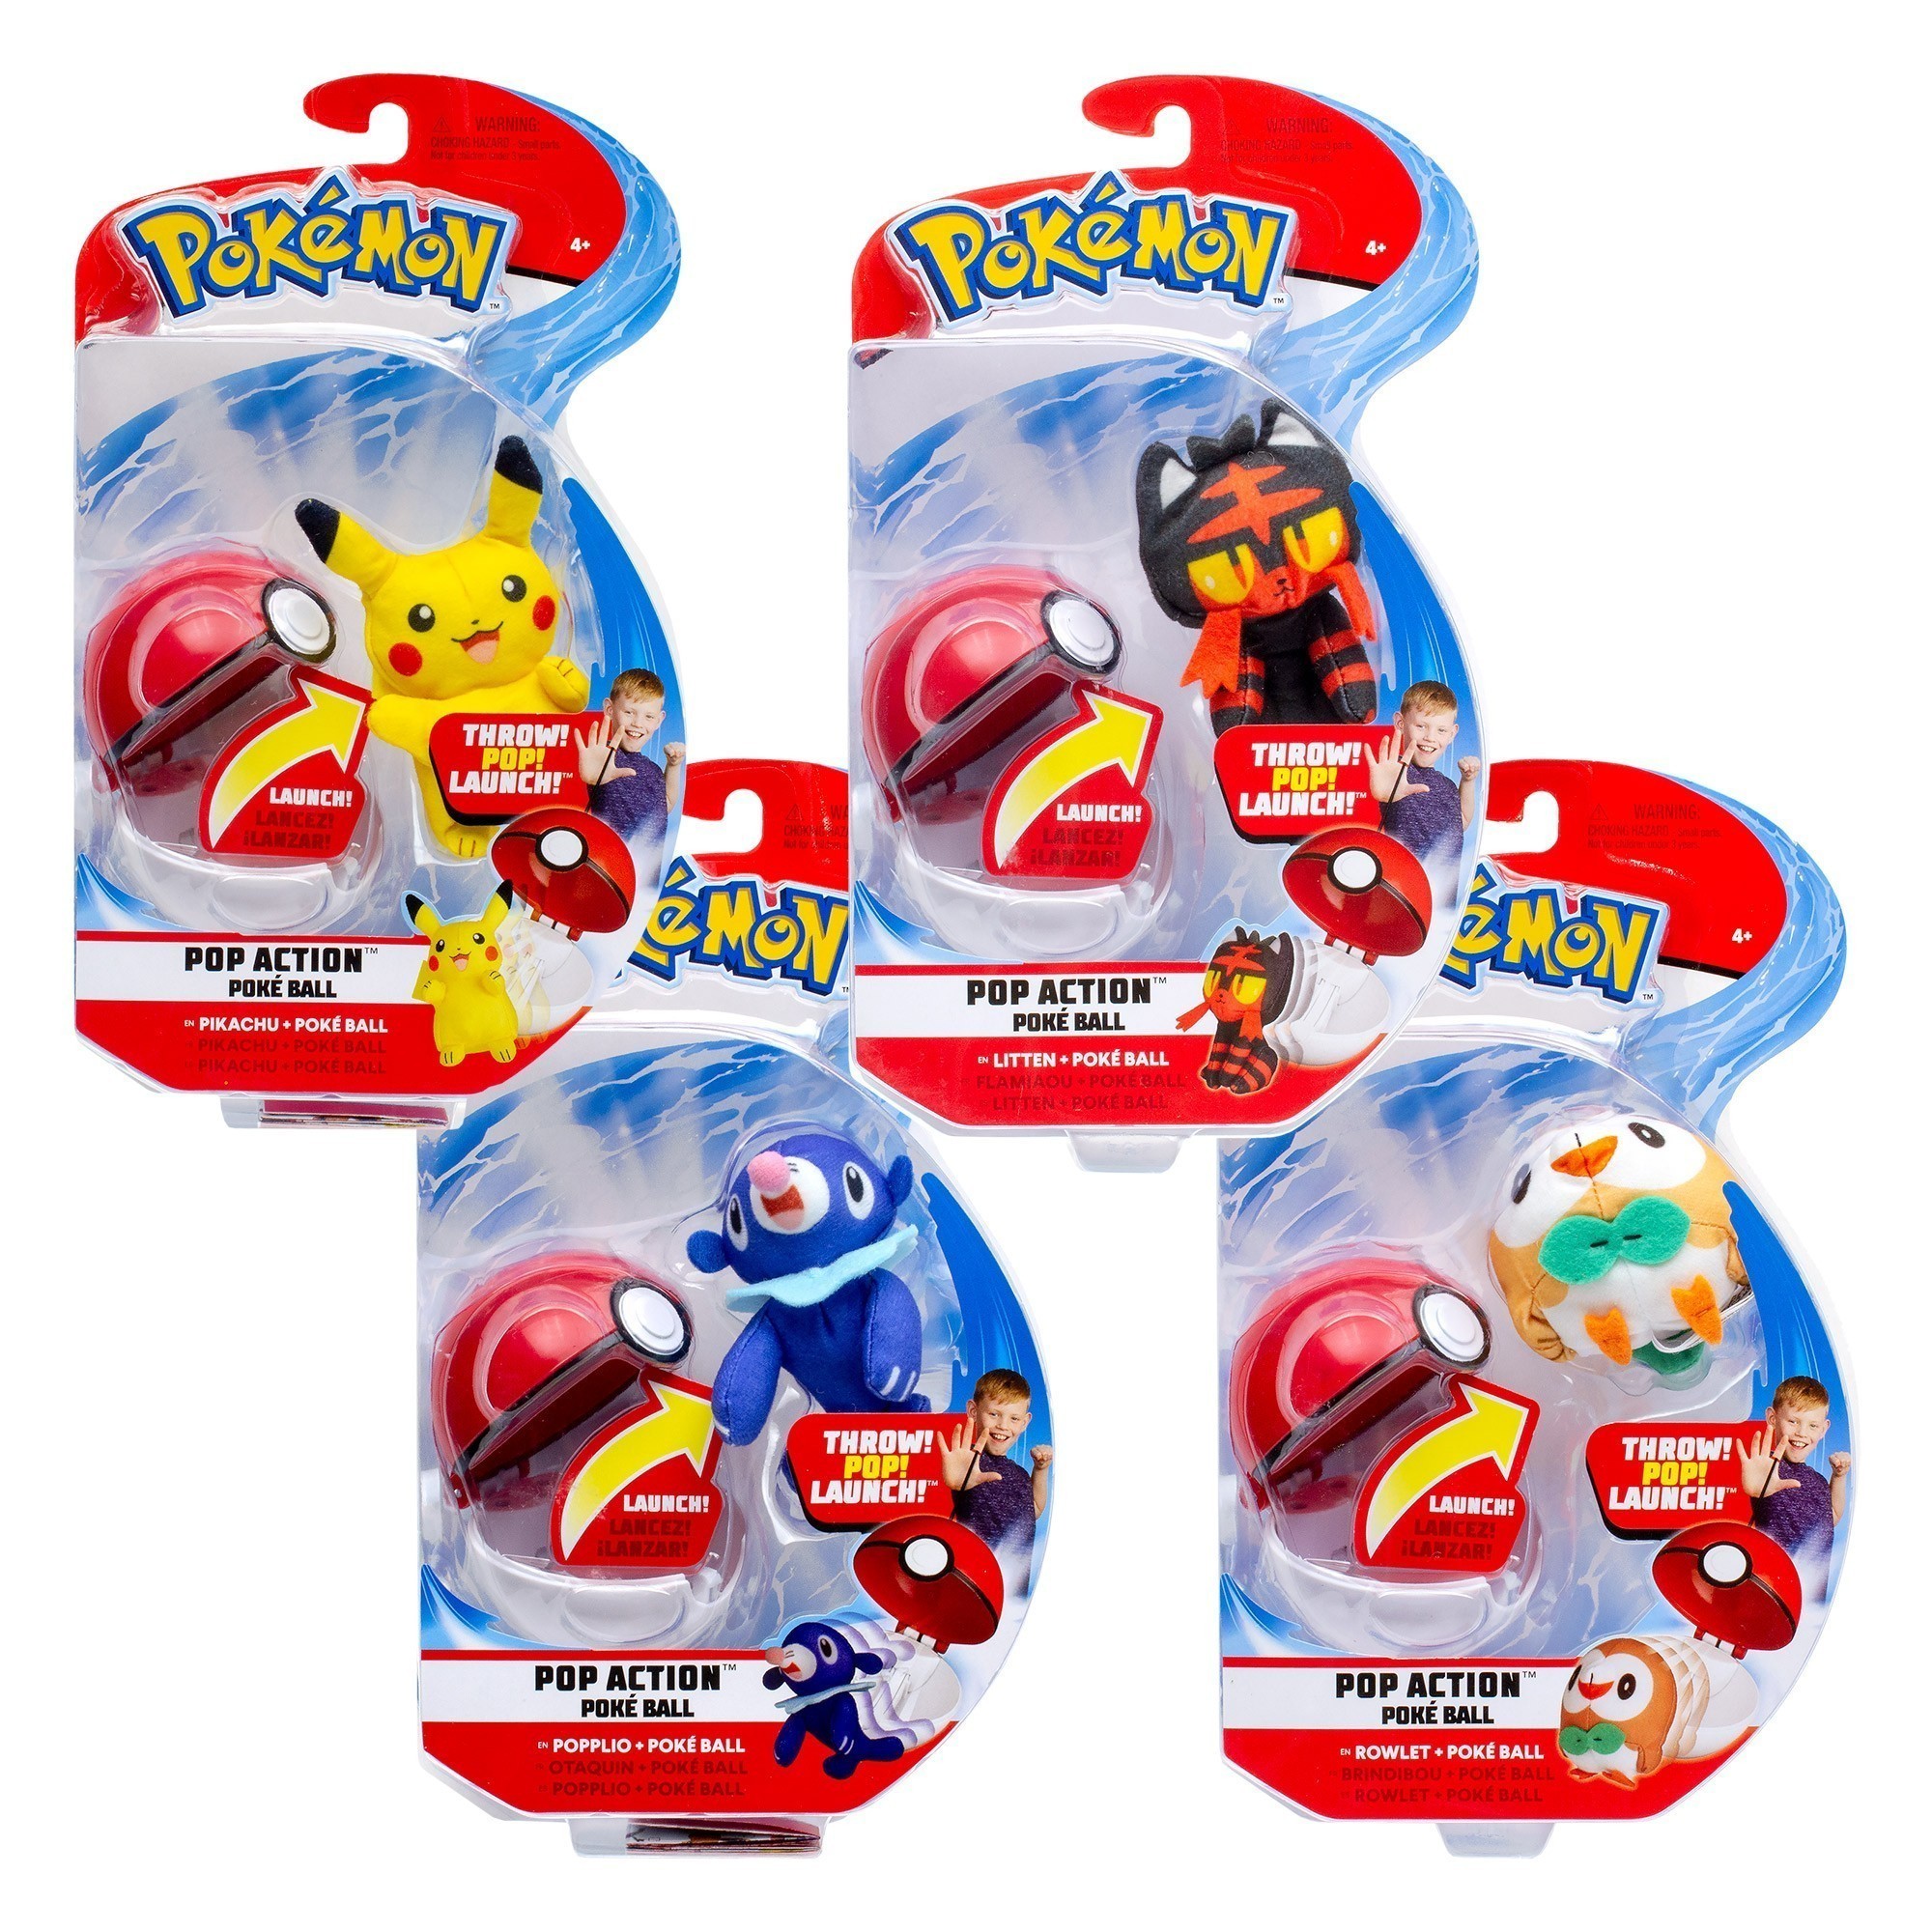 Pokémon - Pop Action Poké Ball Assortment